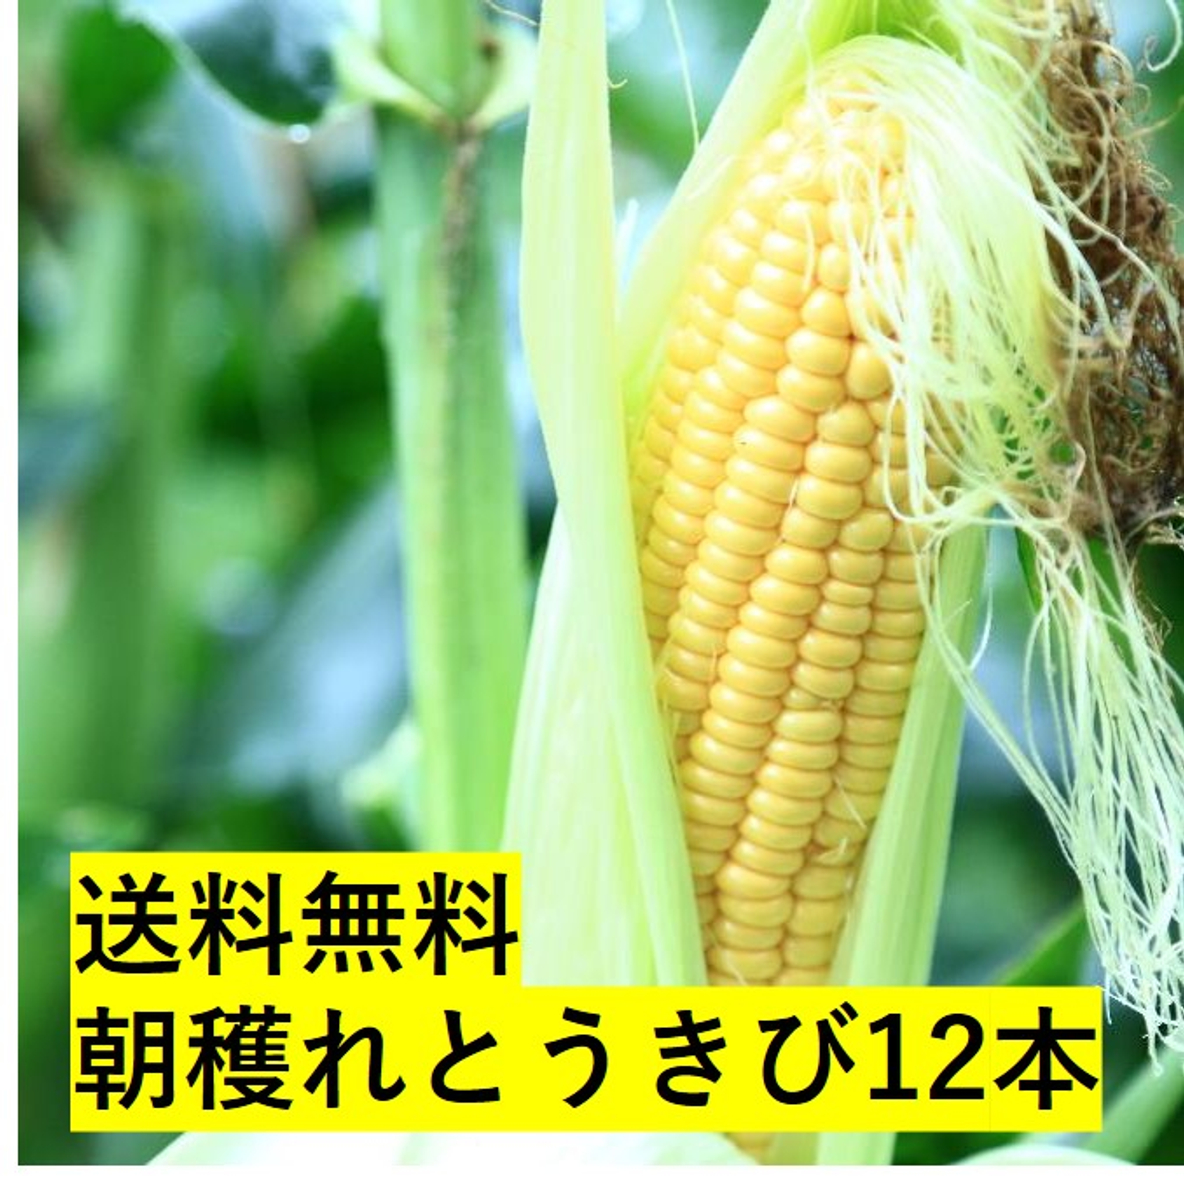 北海道から採れたてをお届け 新鮮で甘 いトウモロコシに思いっ切りかじりついて 北海道の夏を体験 とってもお得な送料無料の限定販売 Newscast